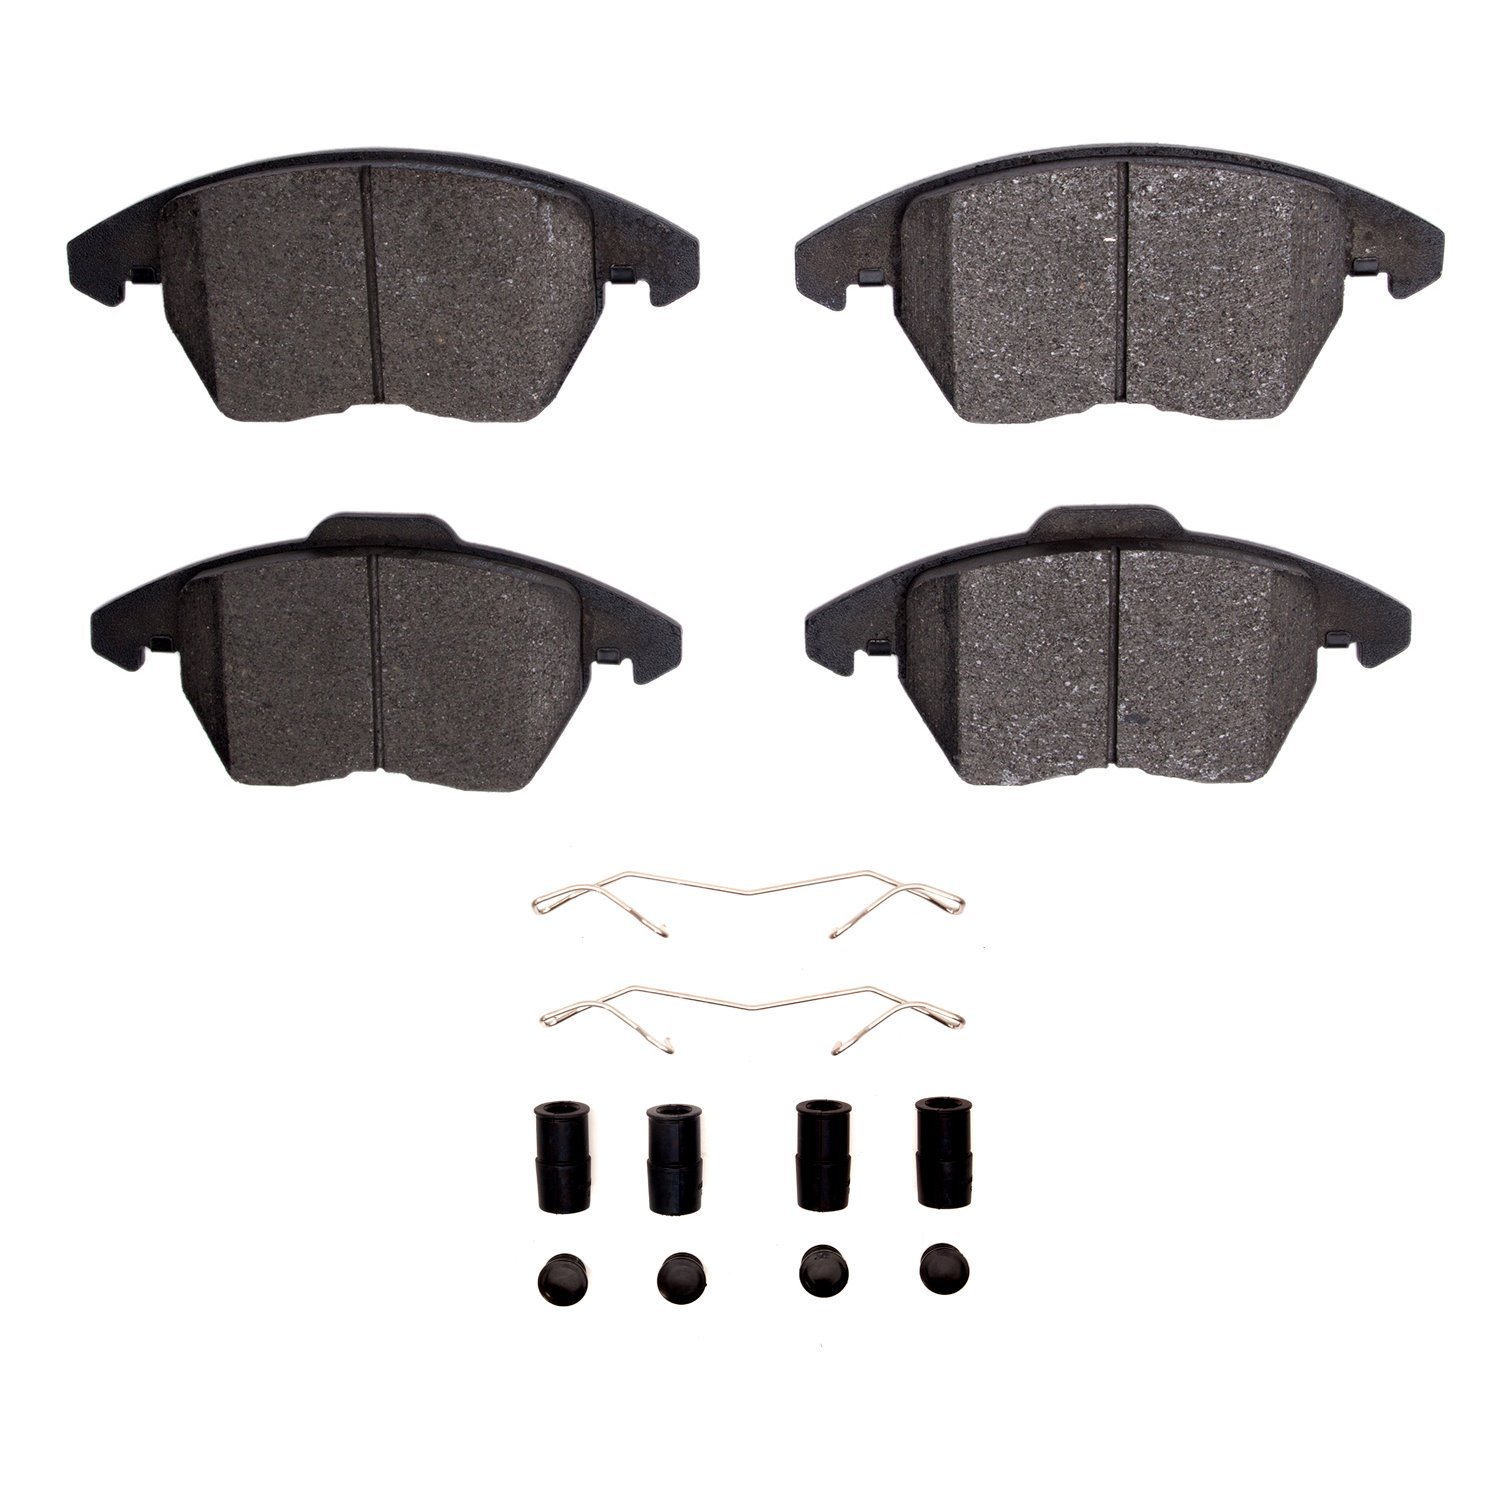 1311-1107-11 3000-Series Semi-Metallic Brake Pads & Hardware Kit, 2011-2015 Peugeot, Position: Front